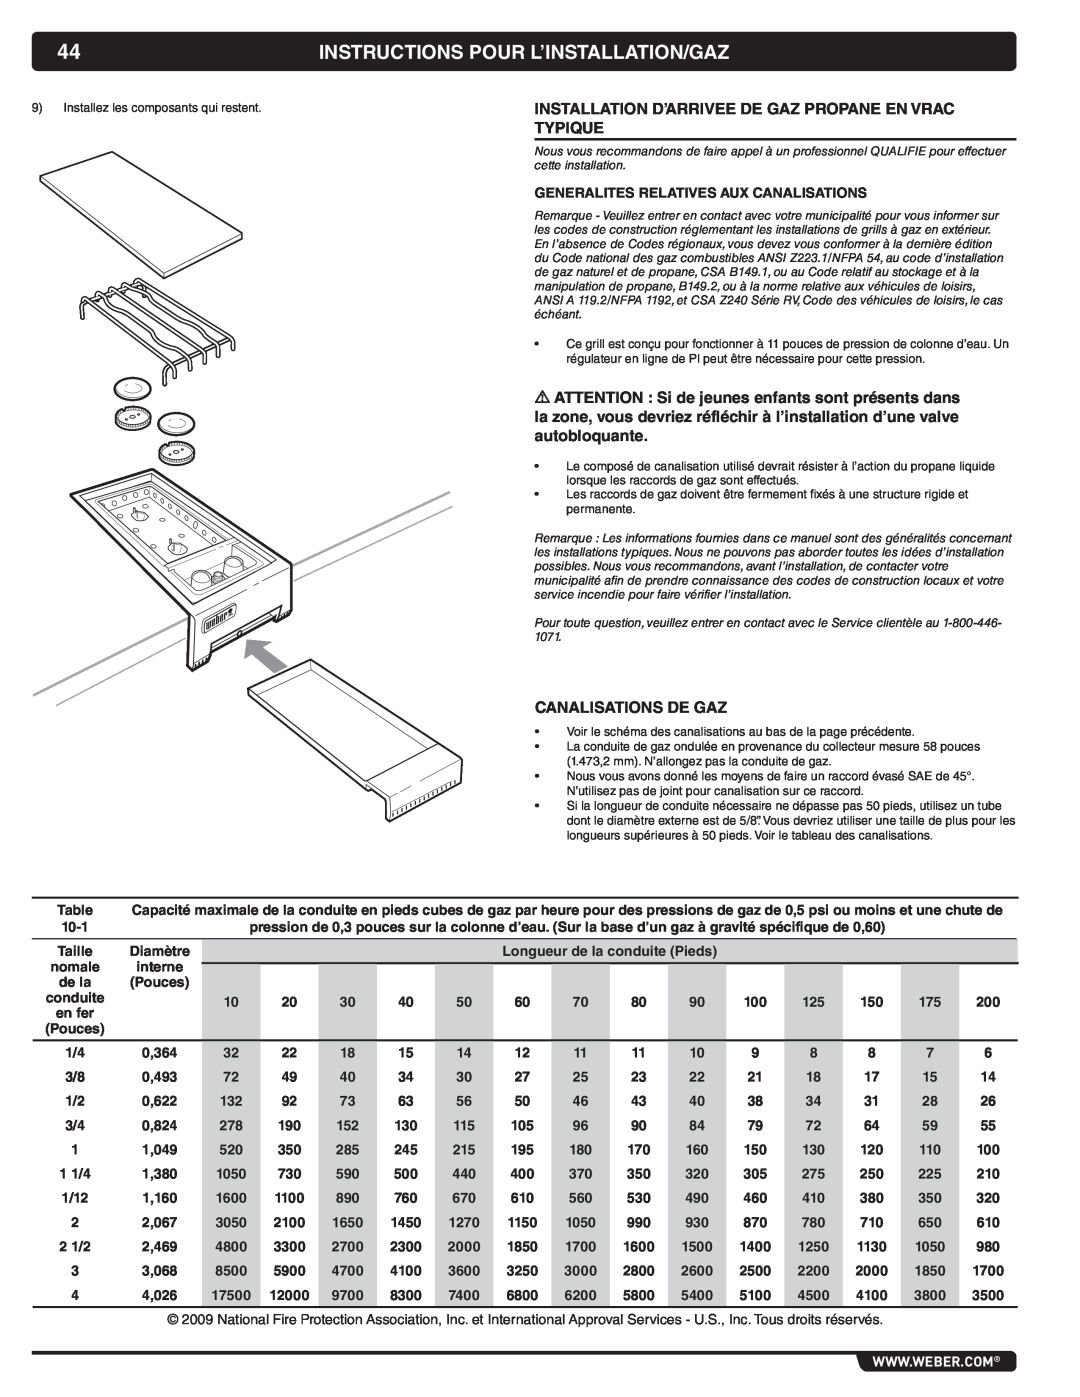 Weber 56069 manual Instructions Pour L’Installation/Gaz, Installation D’Arrivee De Gaz Propane En Vrac Typique 